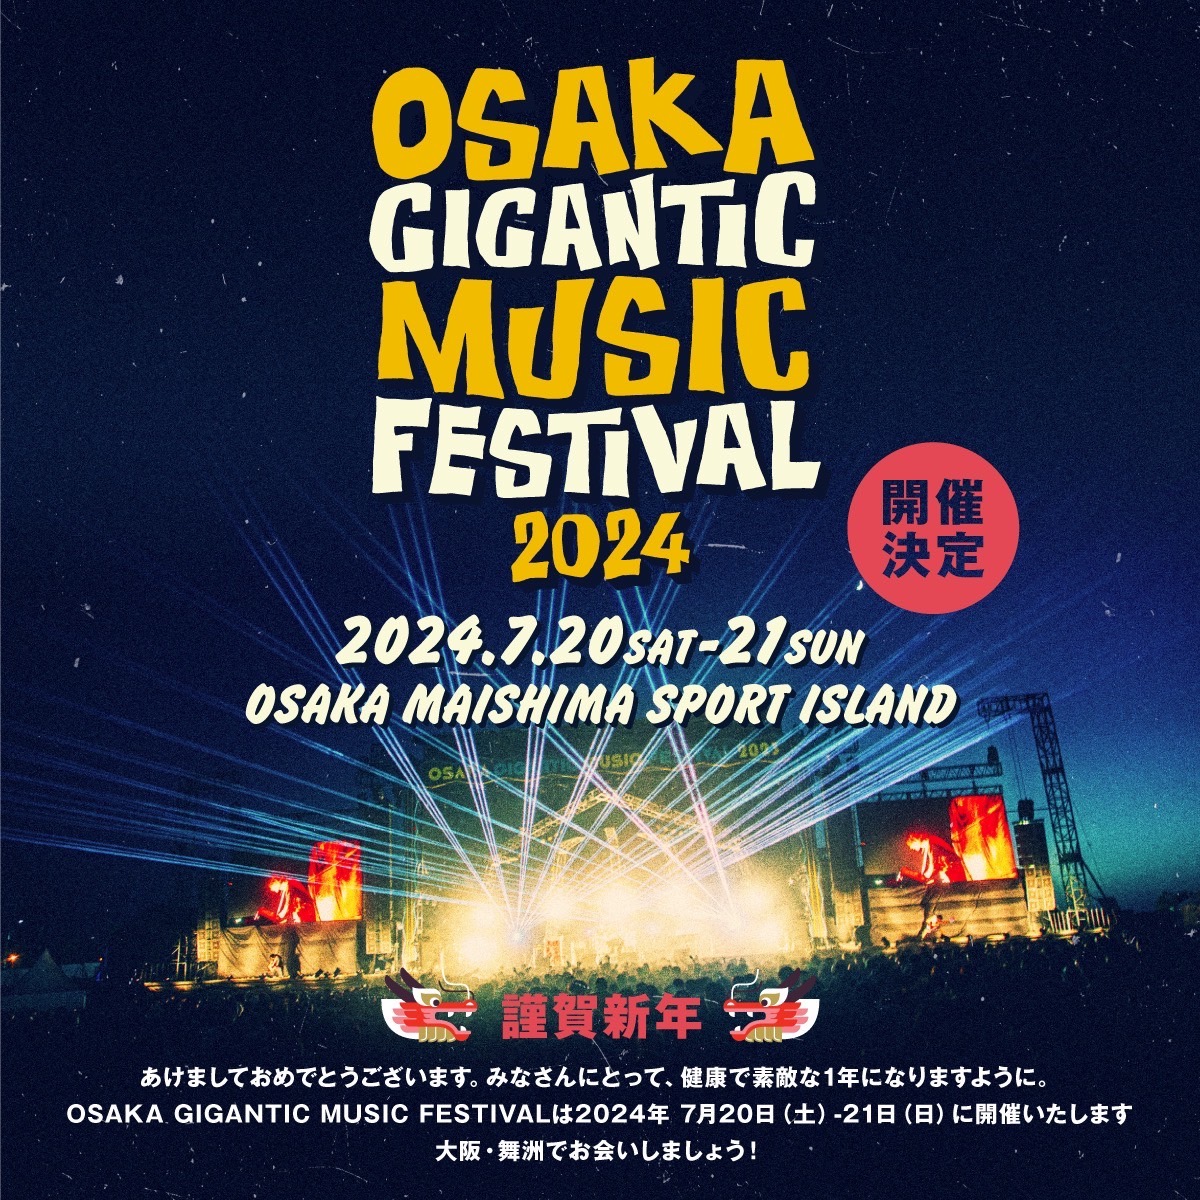 OSAKA GIGANTIC MUSIC FESTIVAL